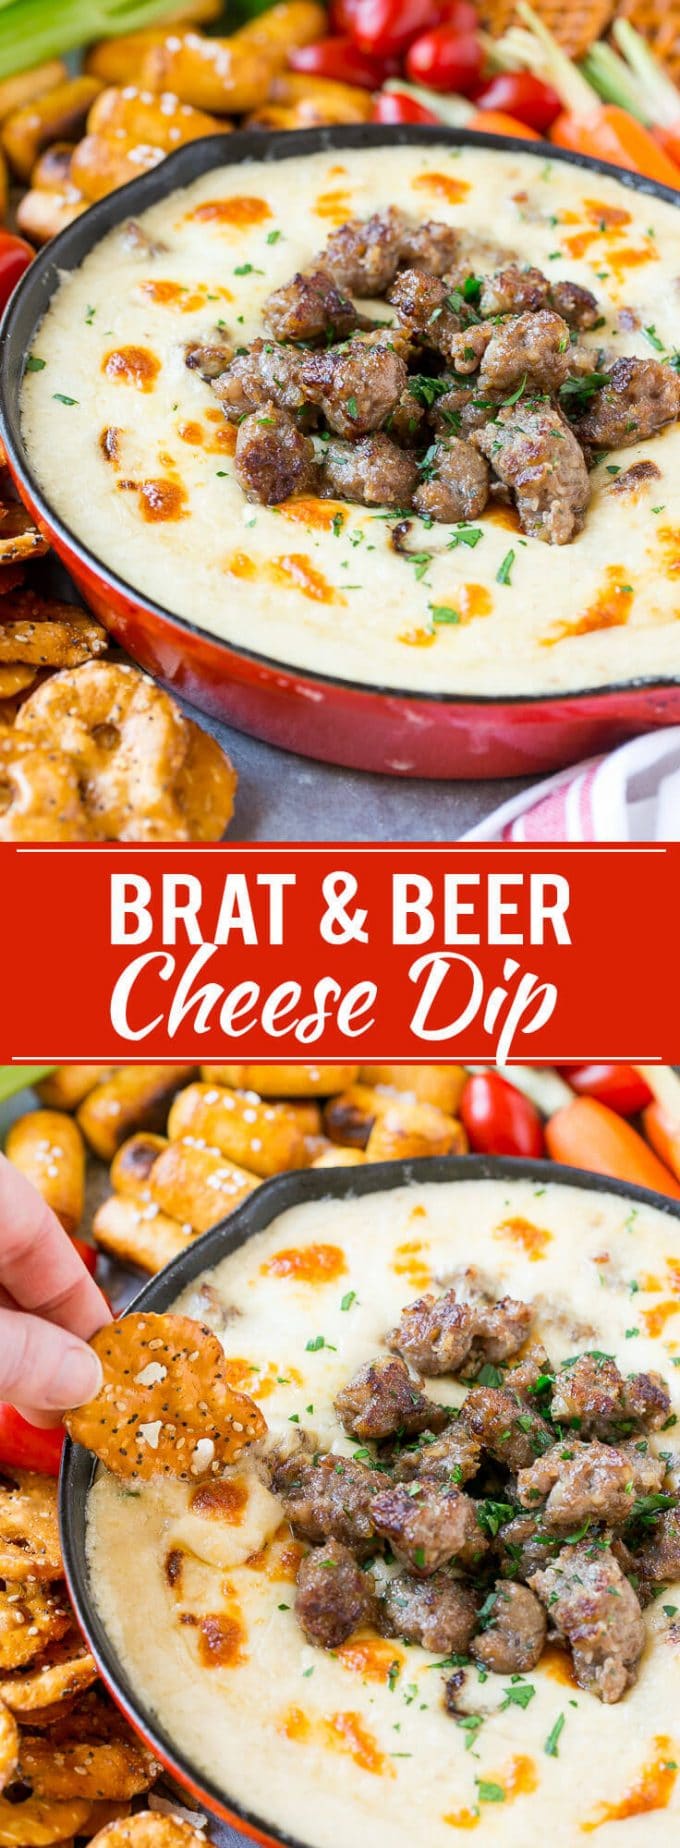 Brat & Beer Cheese Dip Recipe | Beer Cheese Dip | Cheese Dip | Easy Appetizer #beer #cheese #dip #sausage #appetizer #dinneratthezoo